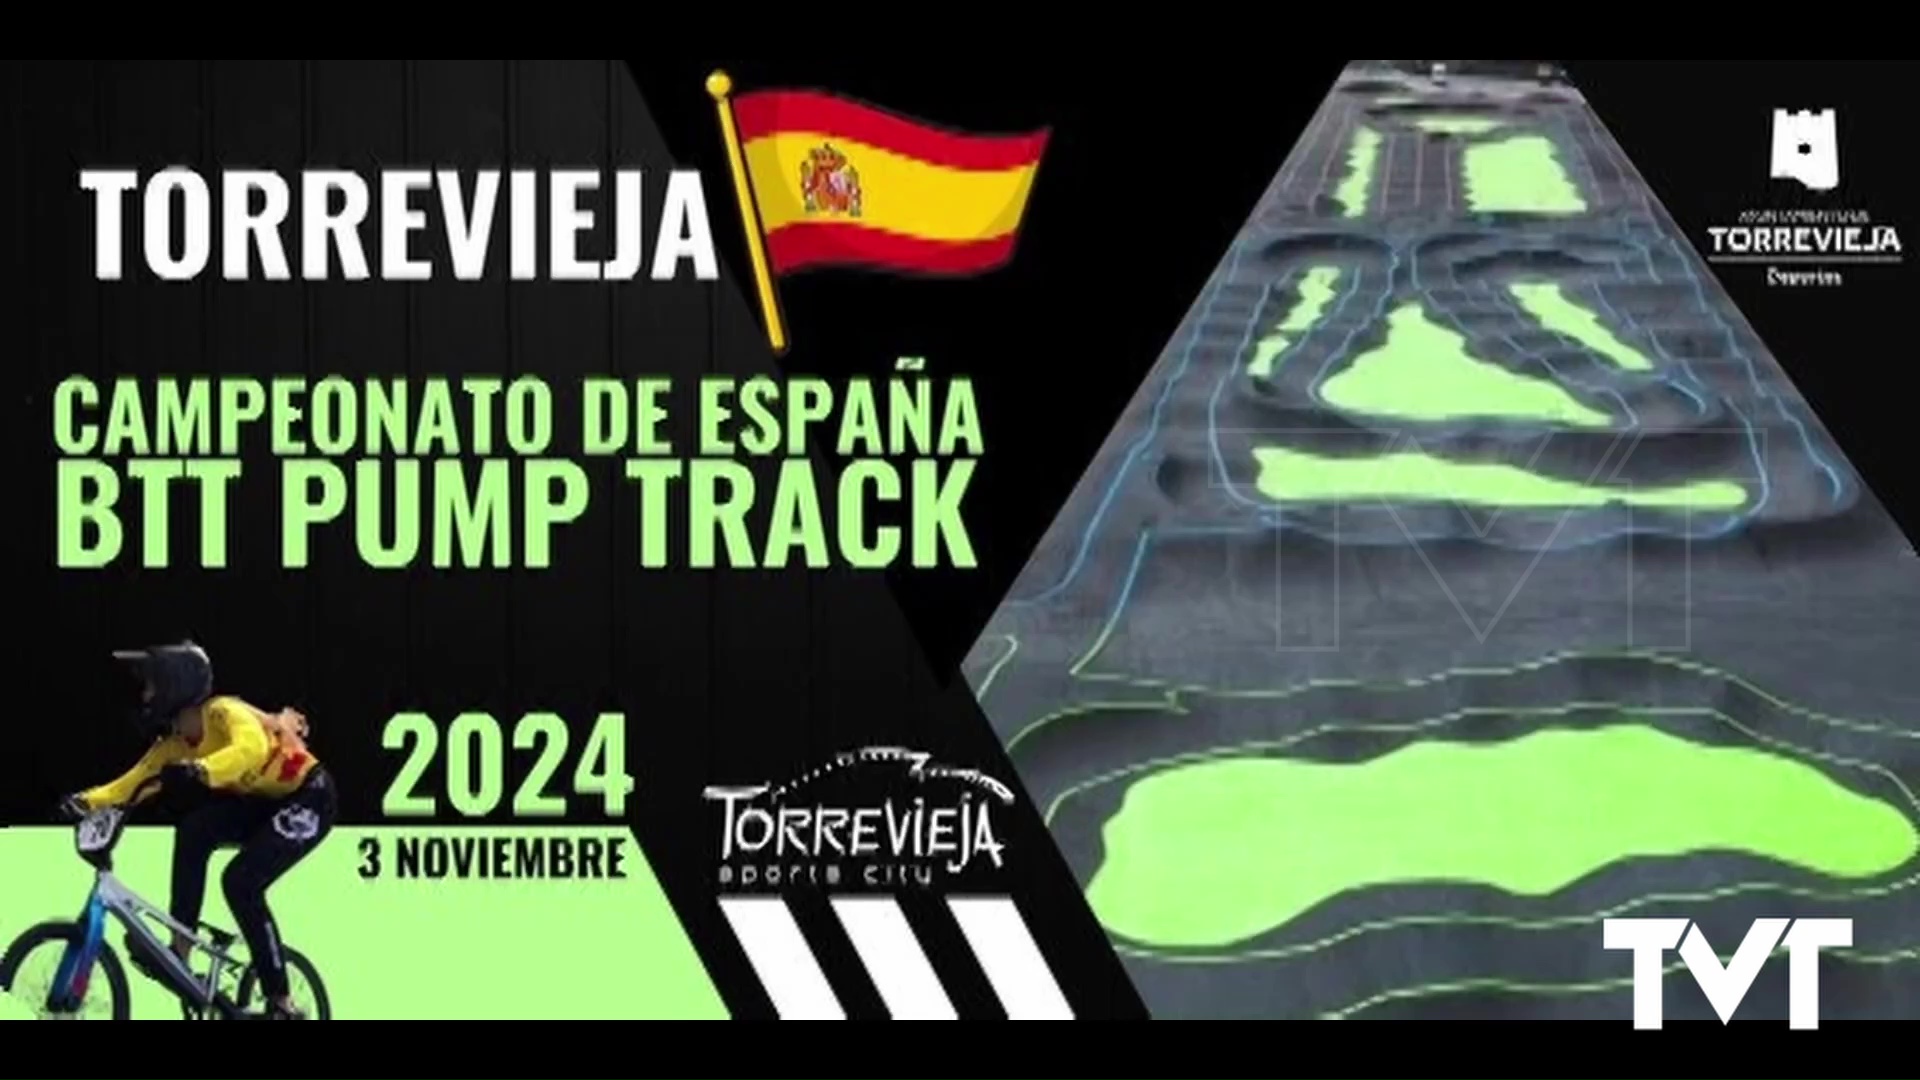 Imagen de Torrevieja, sede del Campeonato de España de Pump Track en 2024